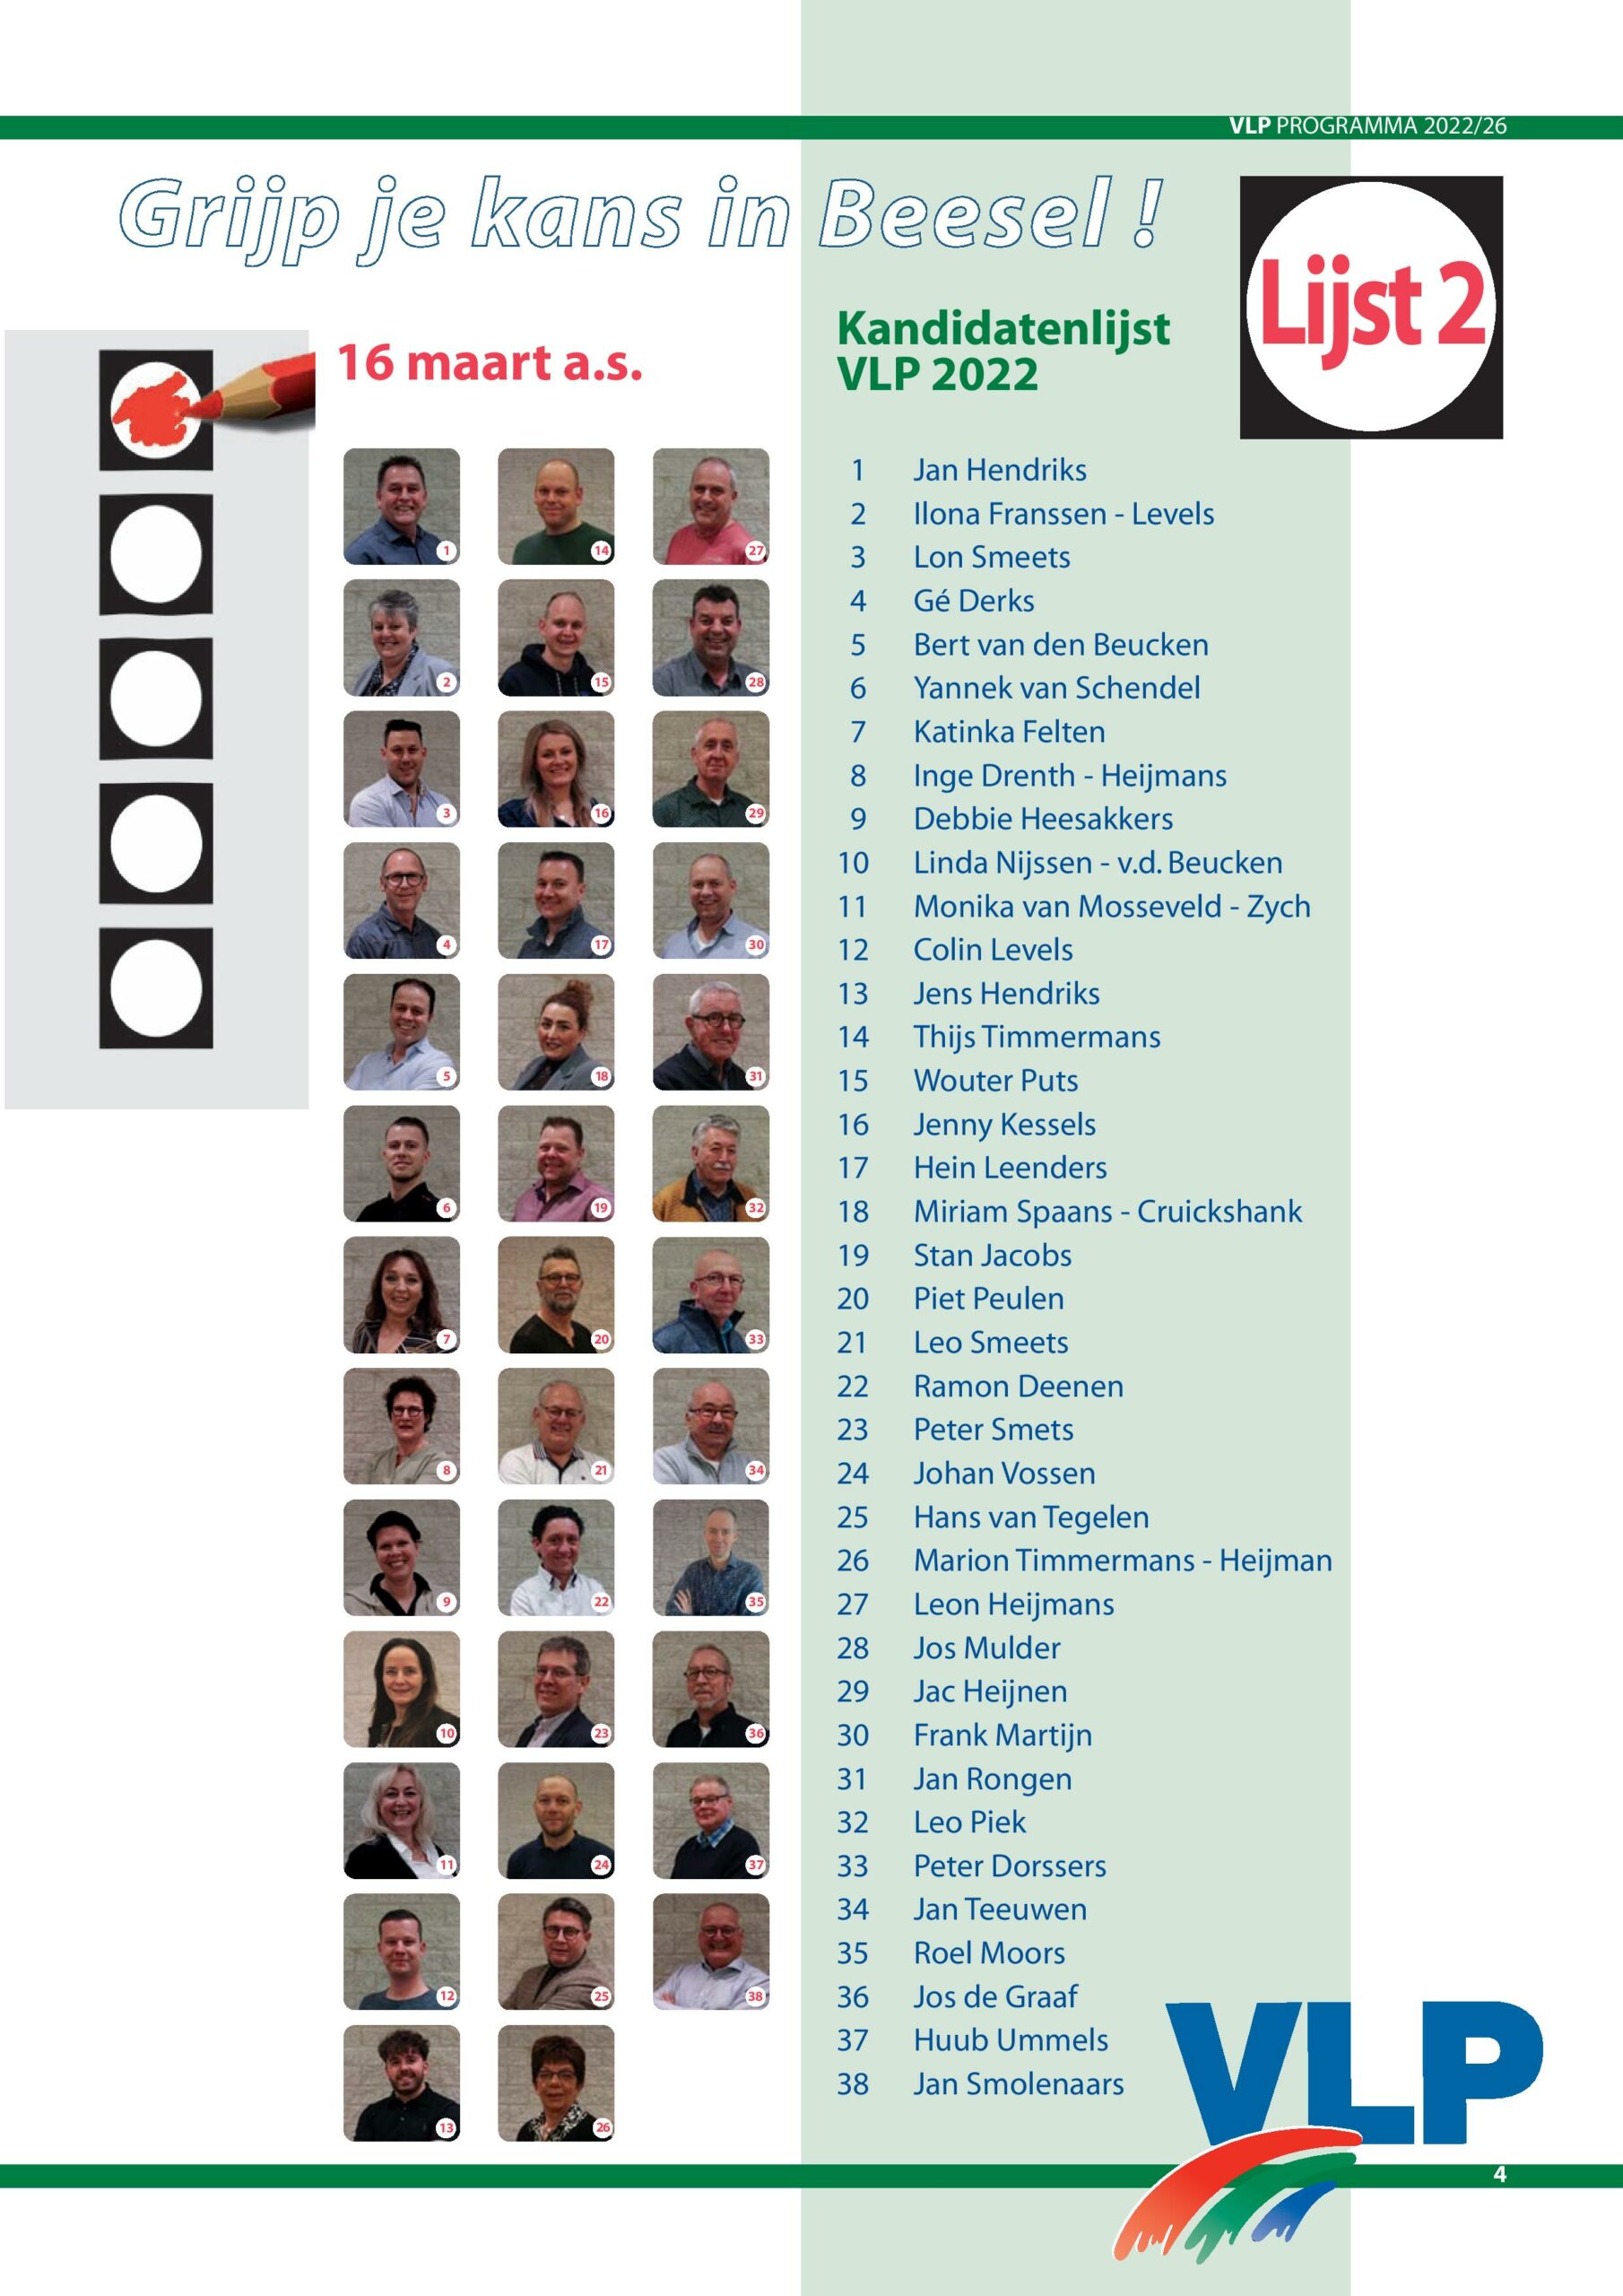 VLP kandidatenlijst, jong en oud, man en vrouw, vertegenwoordigers van alle drie de kernen.